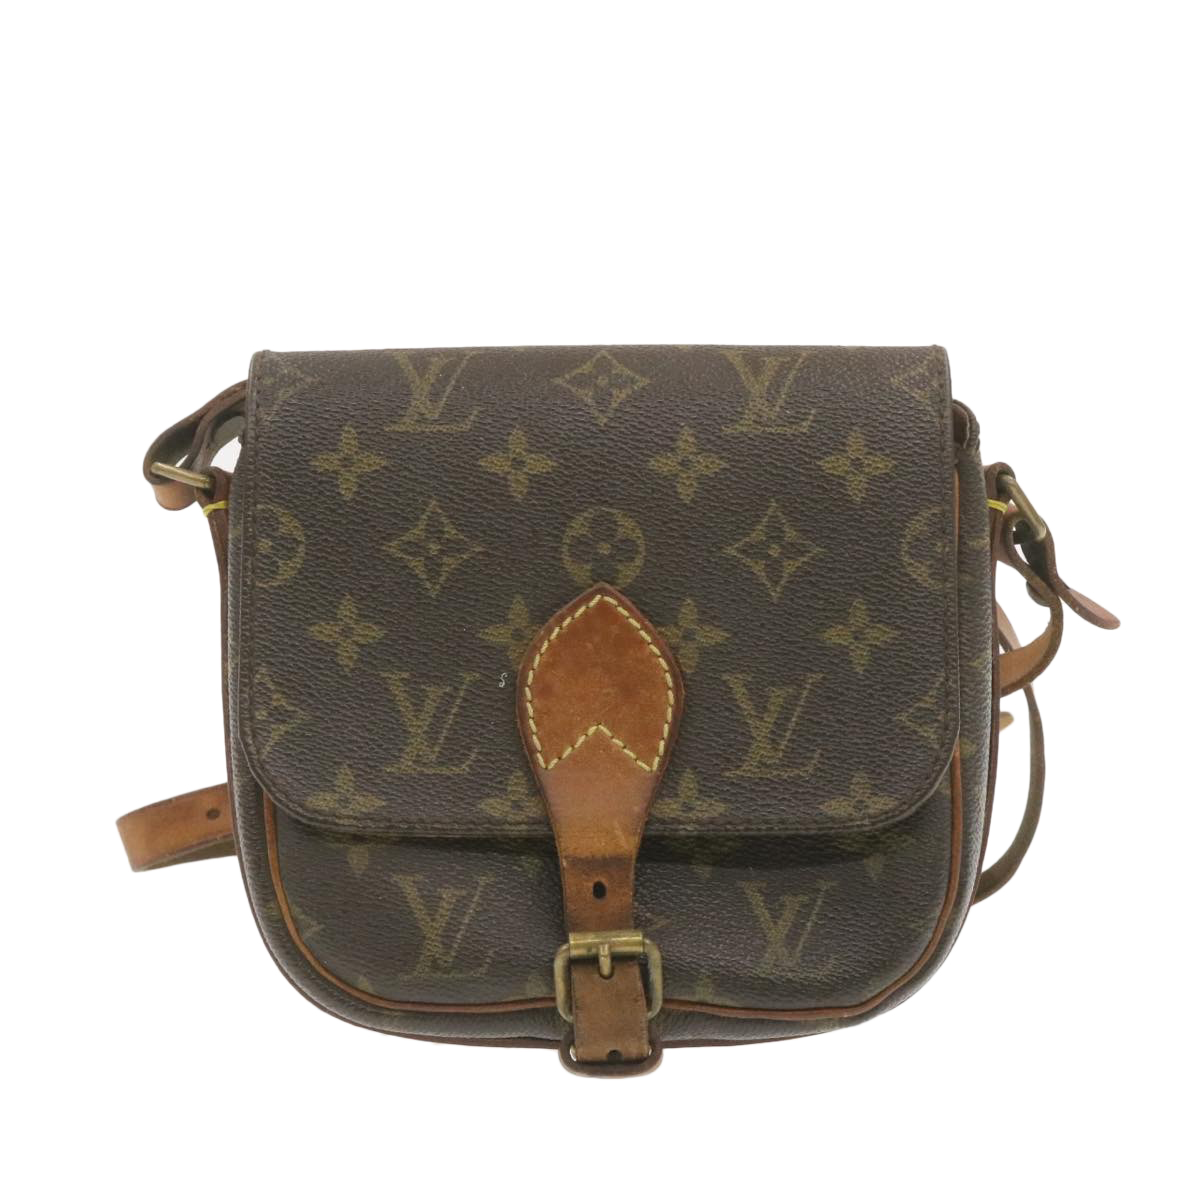 Louis Vuitton Trouville Handbag 360783